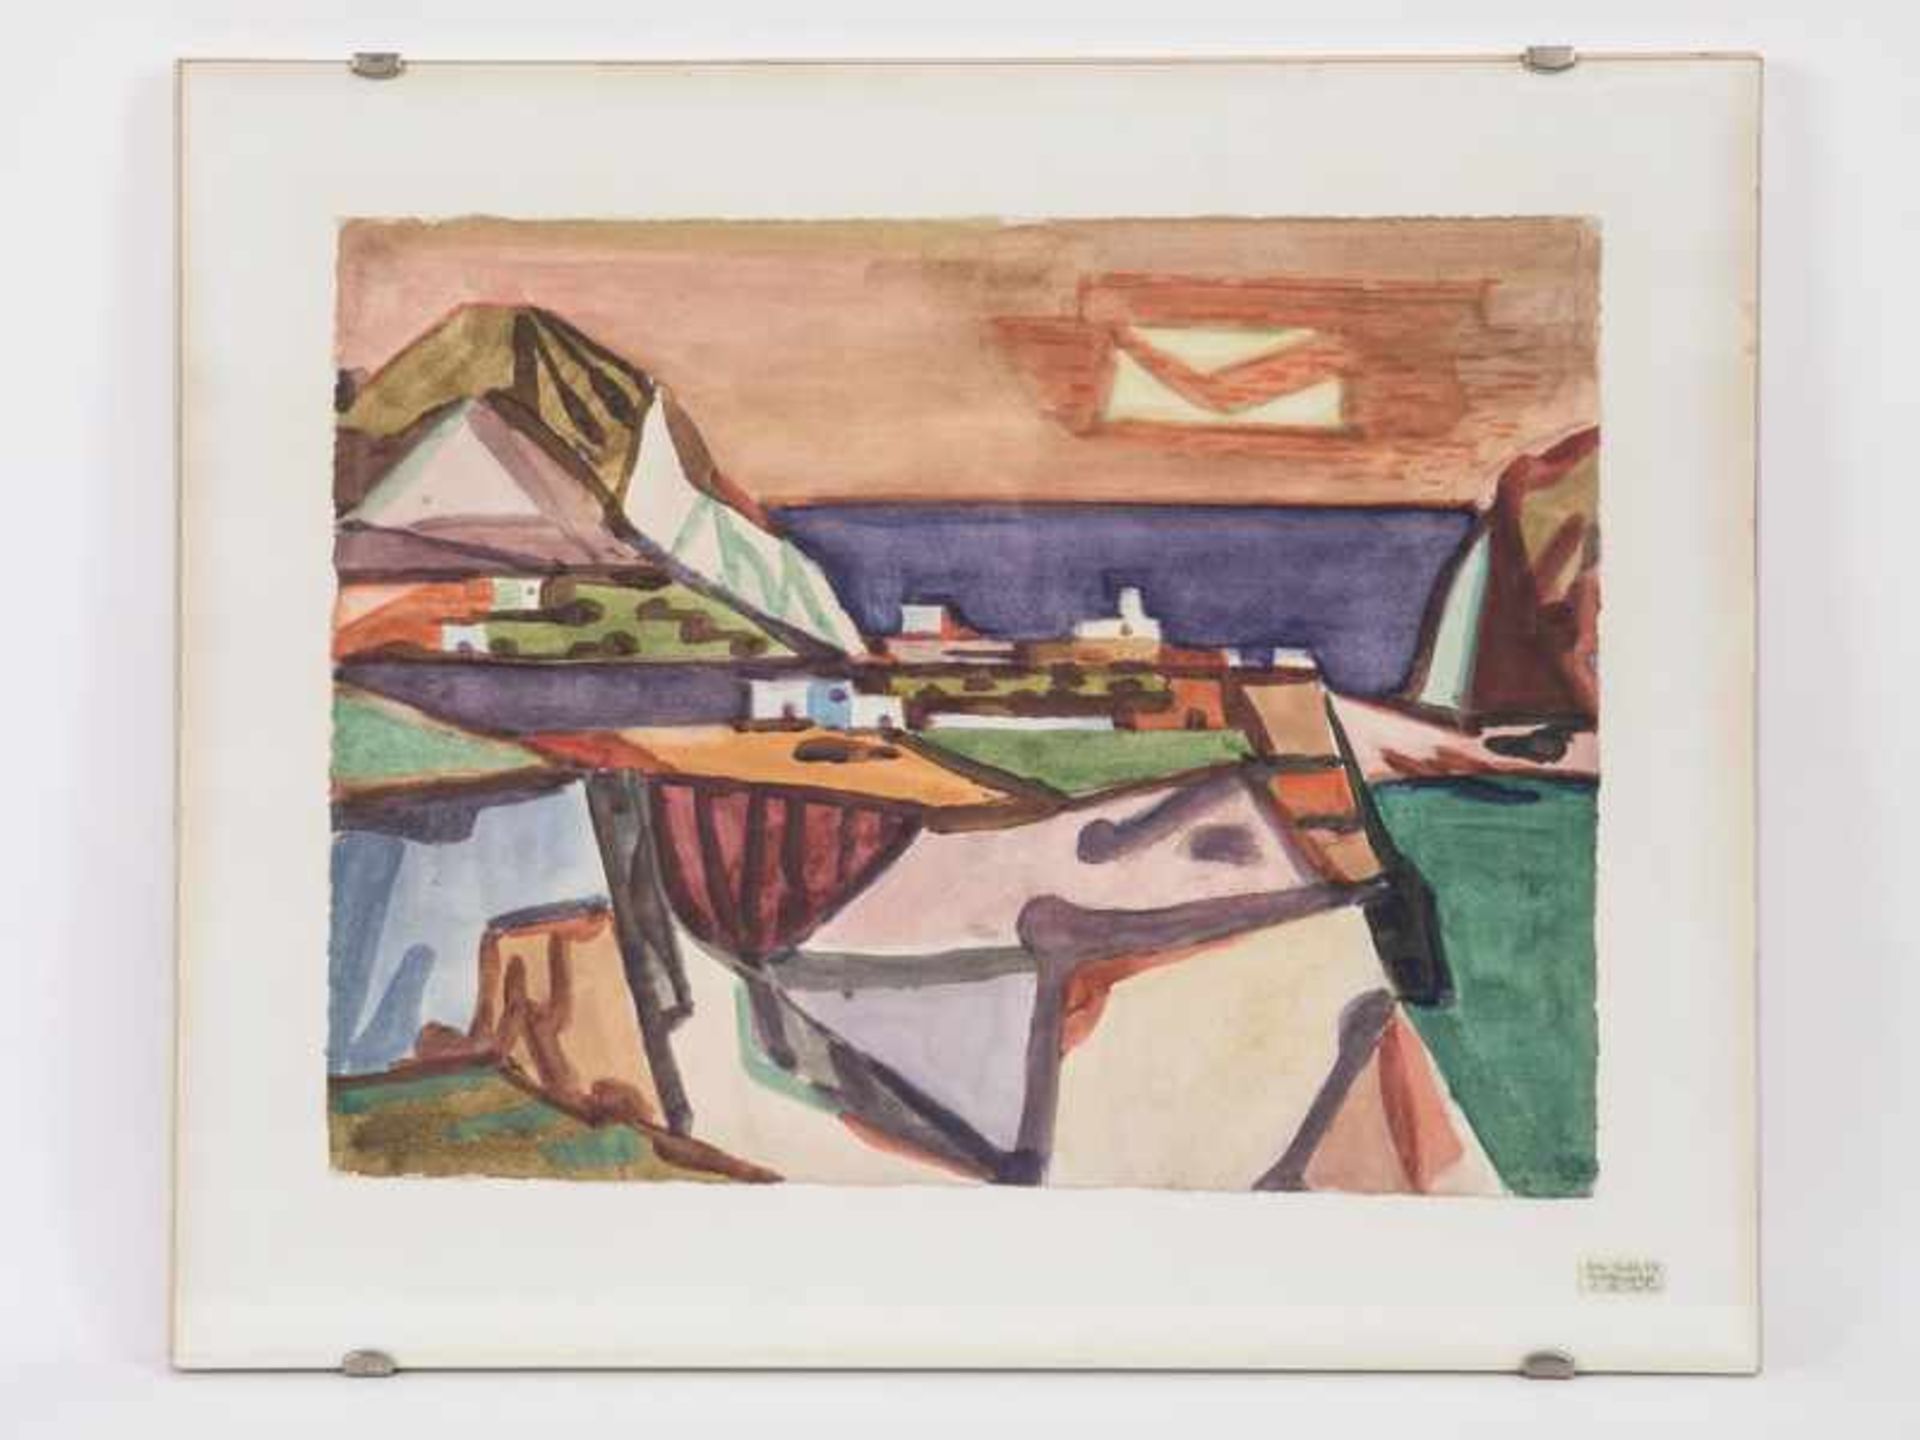 Lichte, Harm (1900 - 1957). Aquarell, "Insellandschaft", 1957. Geometrisch abstrahierte, farbige